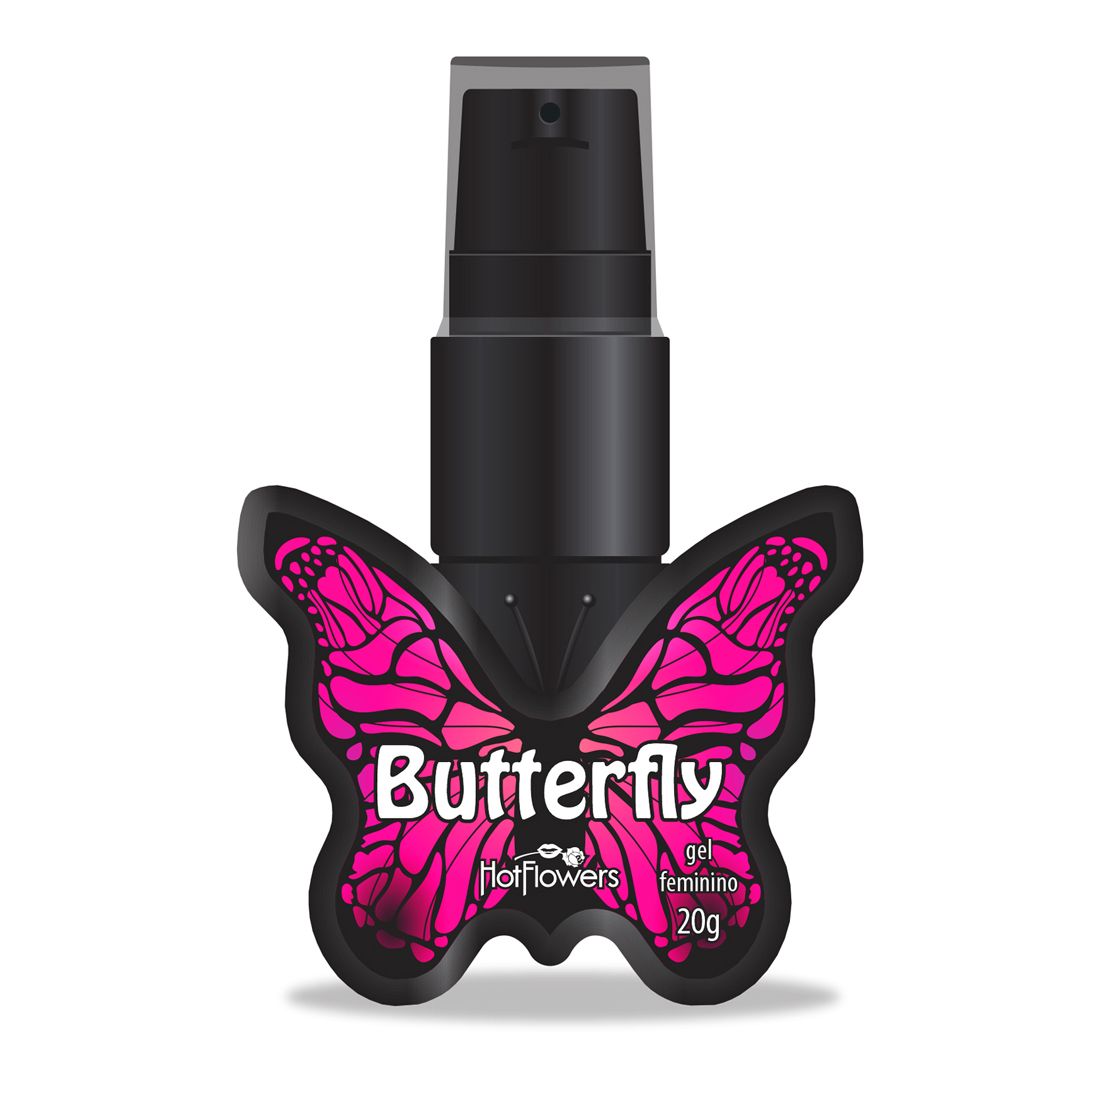 Возбуждающий клиторальный гель Butterfly со вкусом вишни. Возбуждающее средство, вызывающее восхитительное освежение и вибрацию, усиливающее женский оргазм. Его приятно целовать, он обладает невероятным вишневым вкусом.